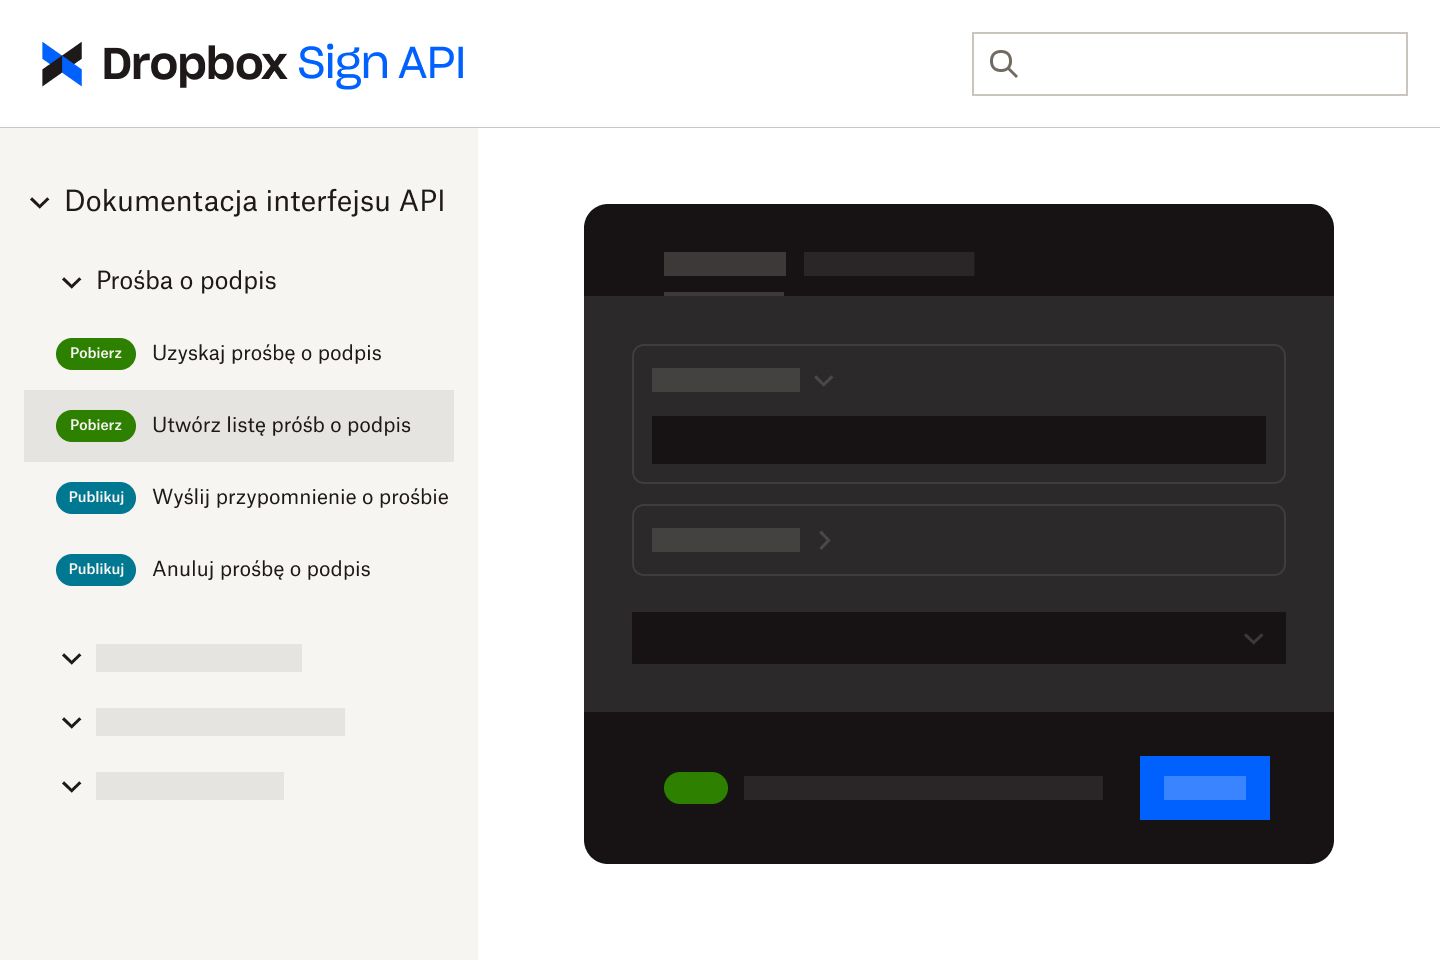 Interfejs API funkcji podpisu elektronicznego Dropbox Sign